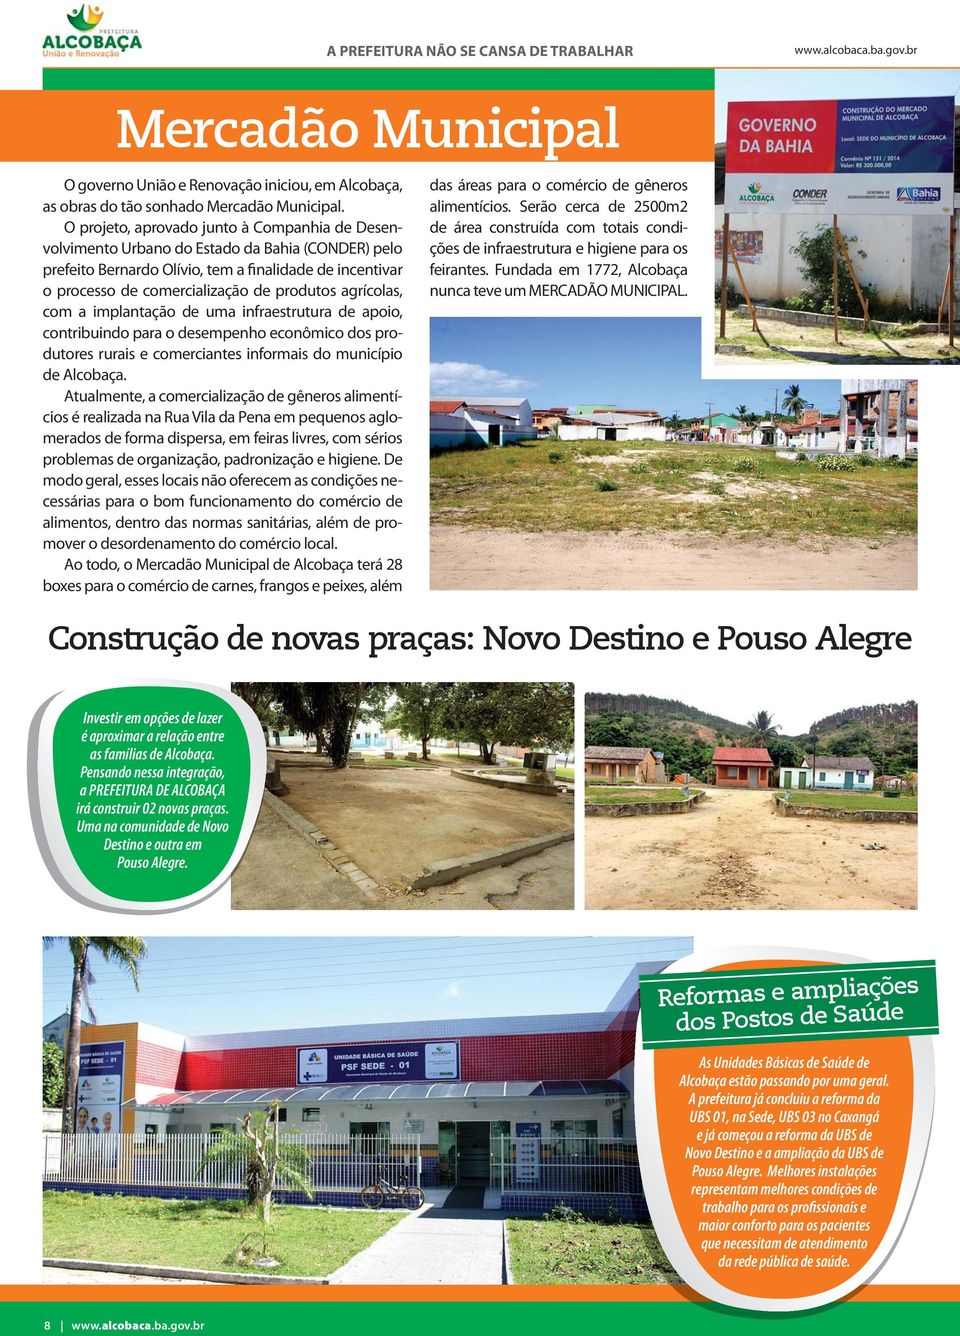 agrícolas, com a implantação de uma infraestrutura de apoio, contribuindo para o desempenho econômico dos produtores rurais e comerciantes informais do município de Alcobaça.